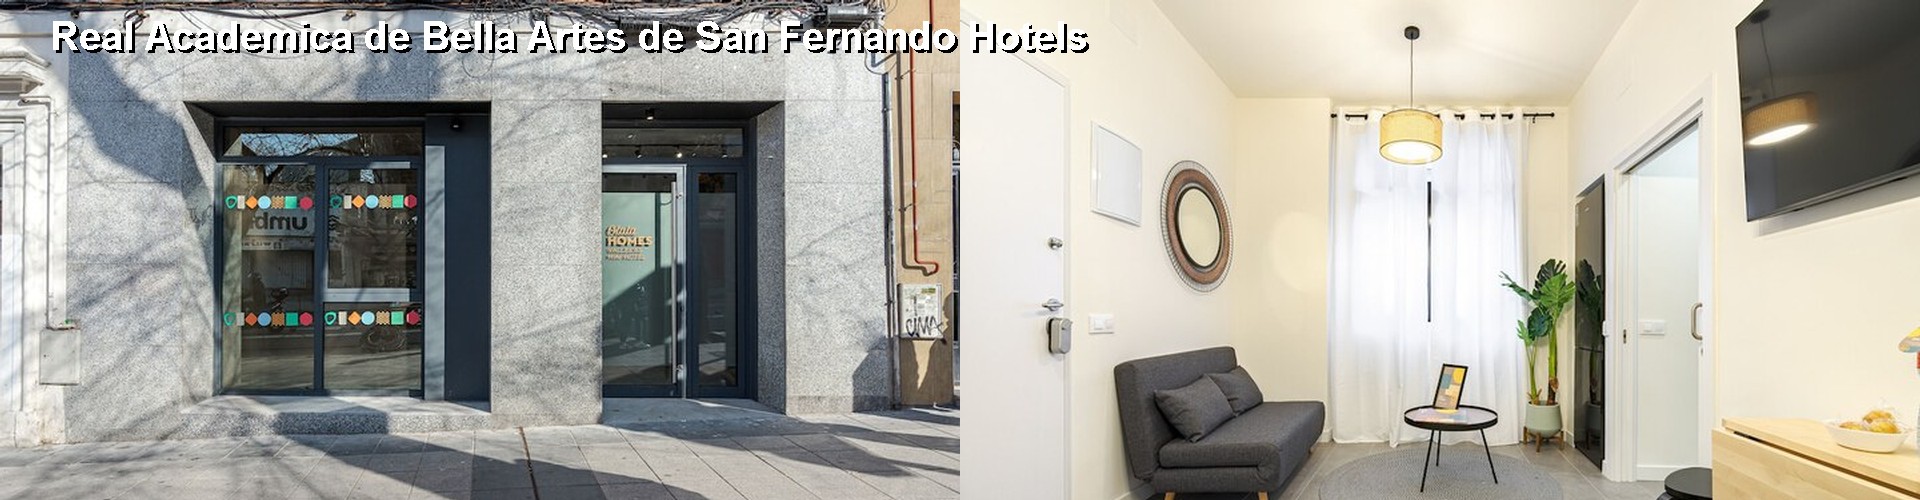 5 Best Hotels near Real Academica de Bella Artes de San Fernando